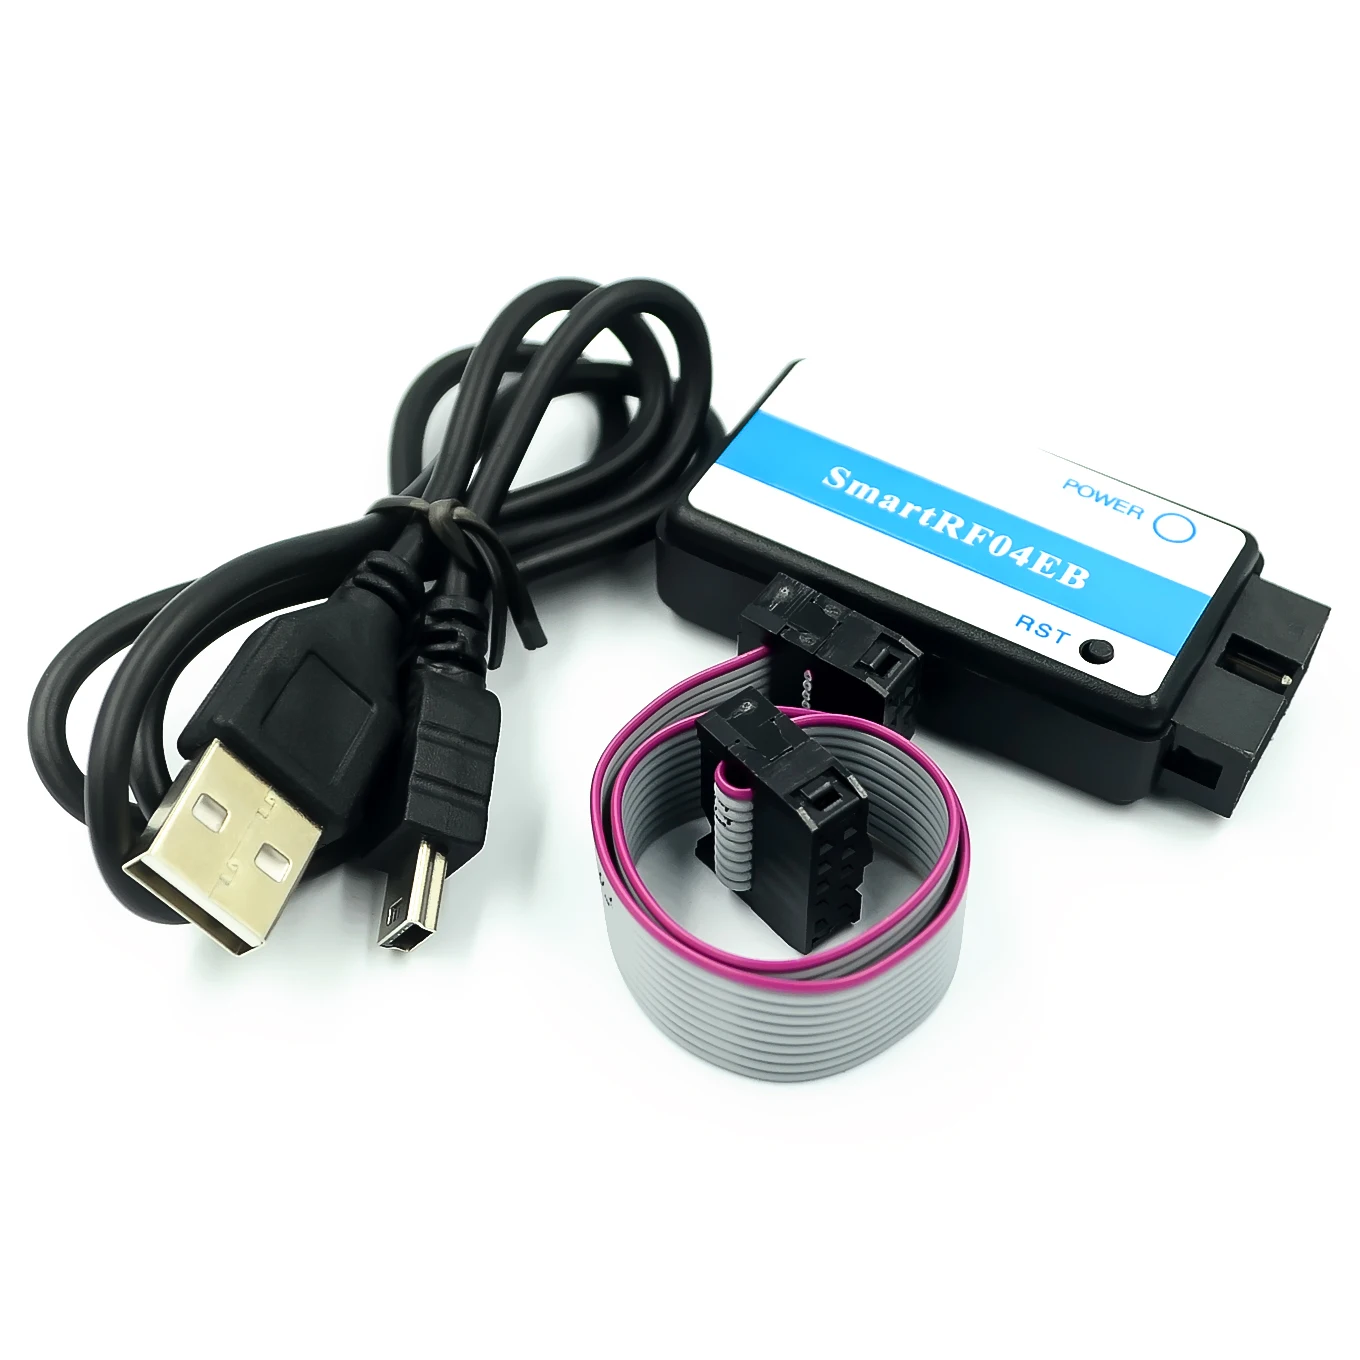 SmartRF04EB CC1110 CC2530 ZigBee модуль USB загрузчик эмулятор MCU M100 питание от 5 в micro USB 2,0 интерфейс HDMI выход